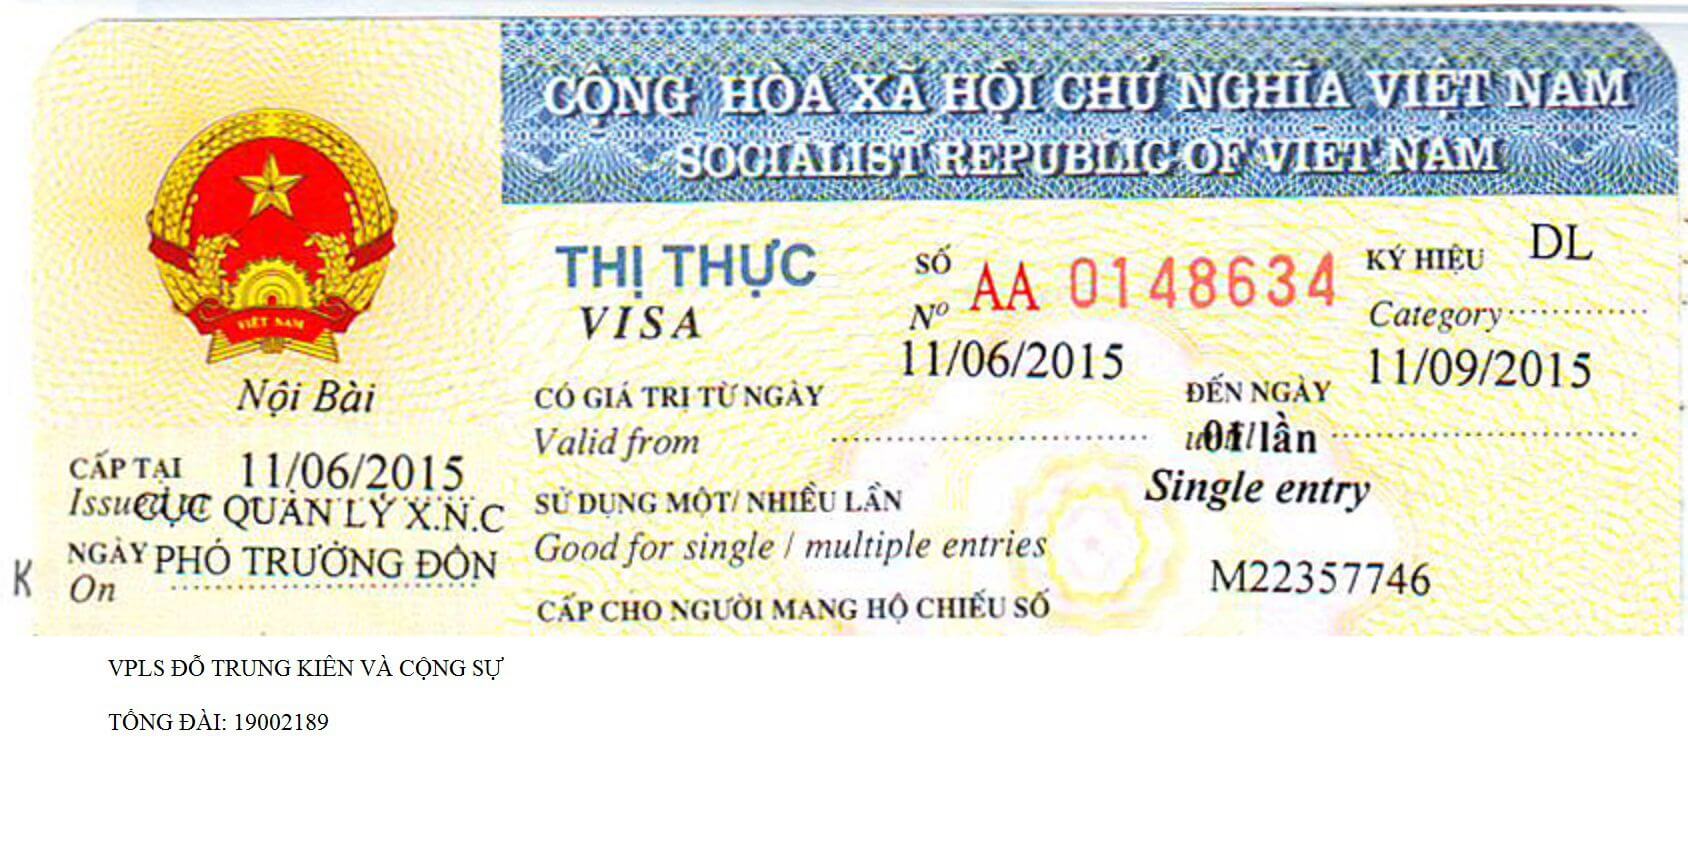 Thời hạn thị thực (Visa cho người nước ngoài tại Việt Nam)